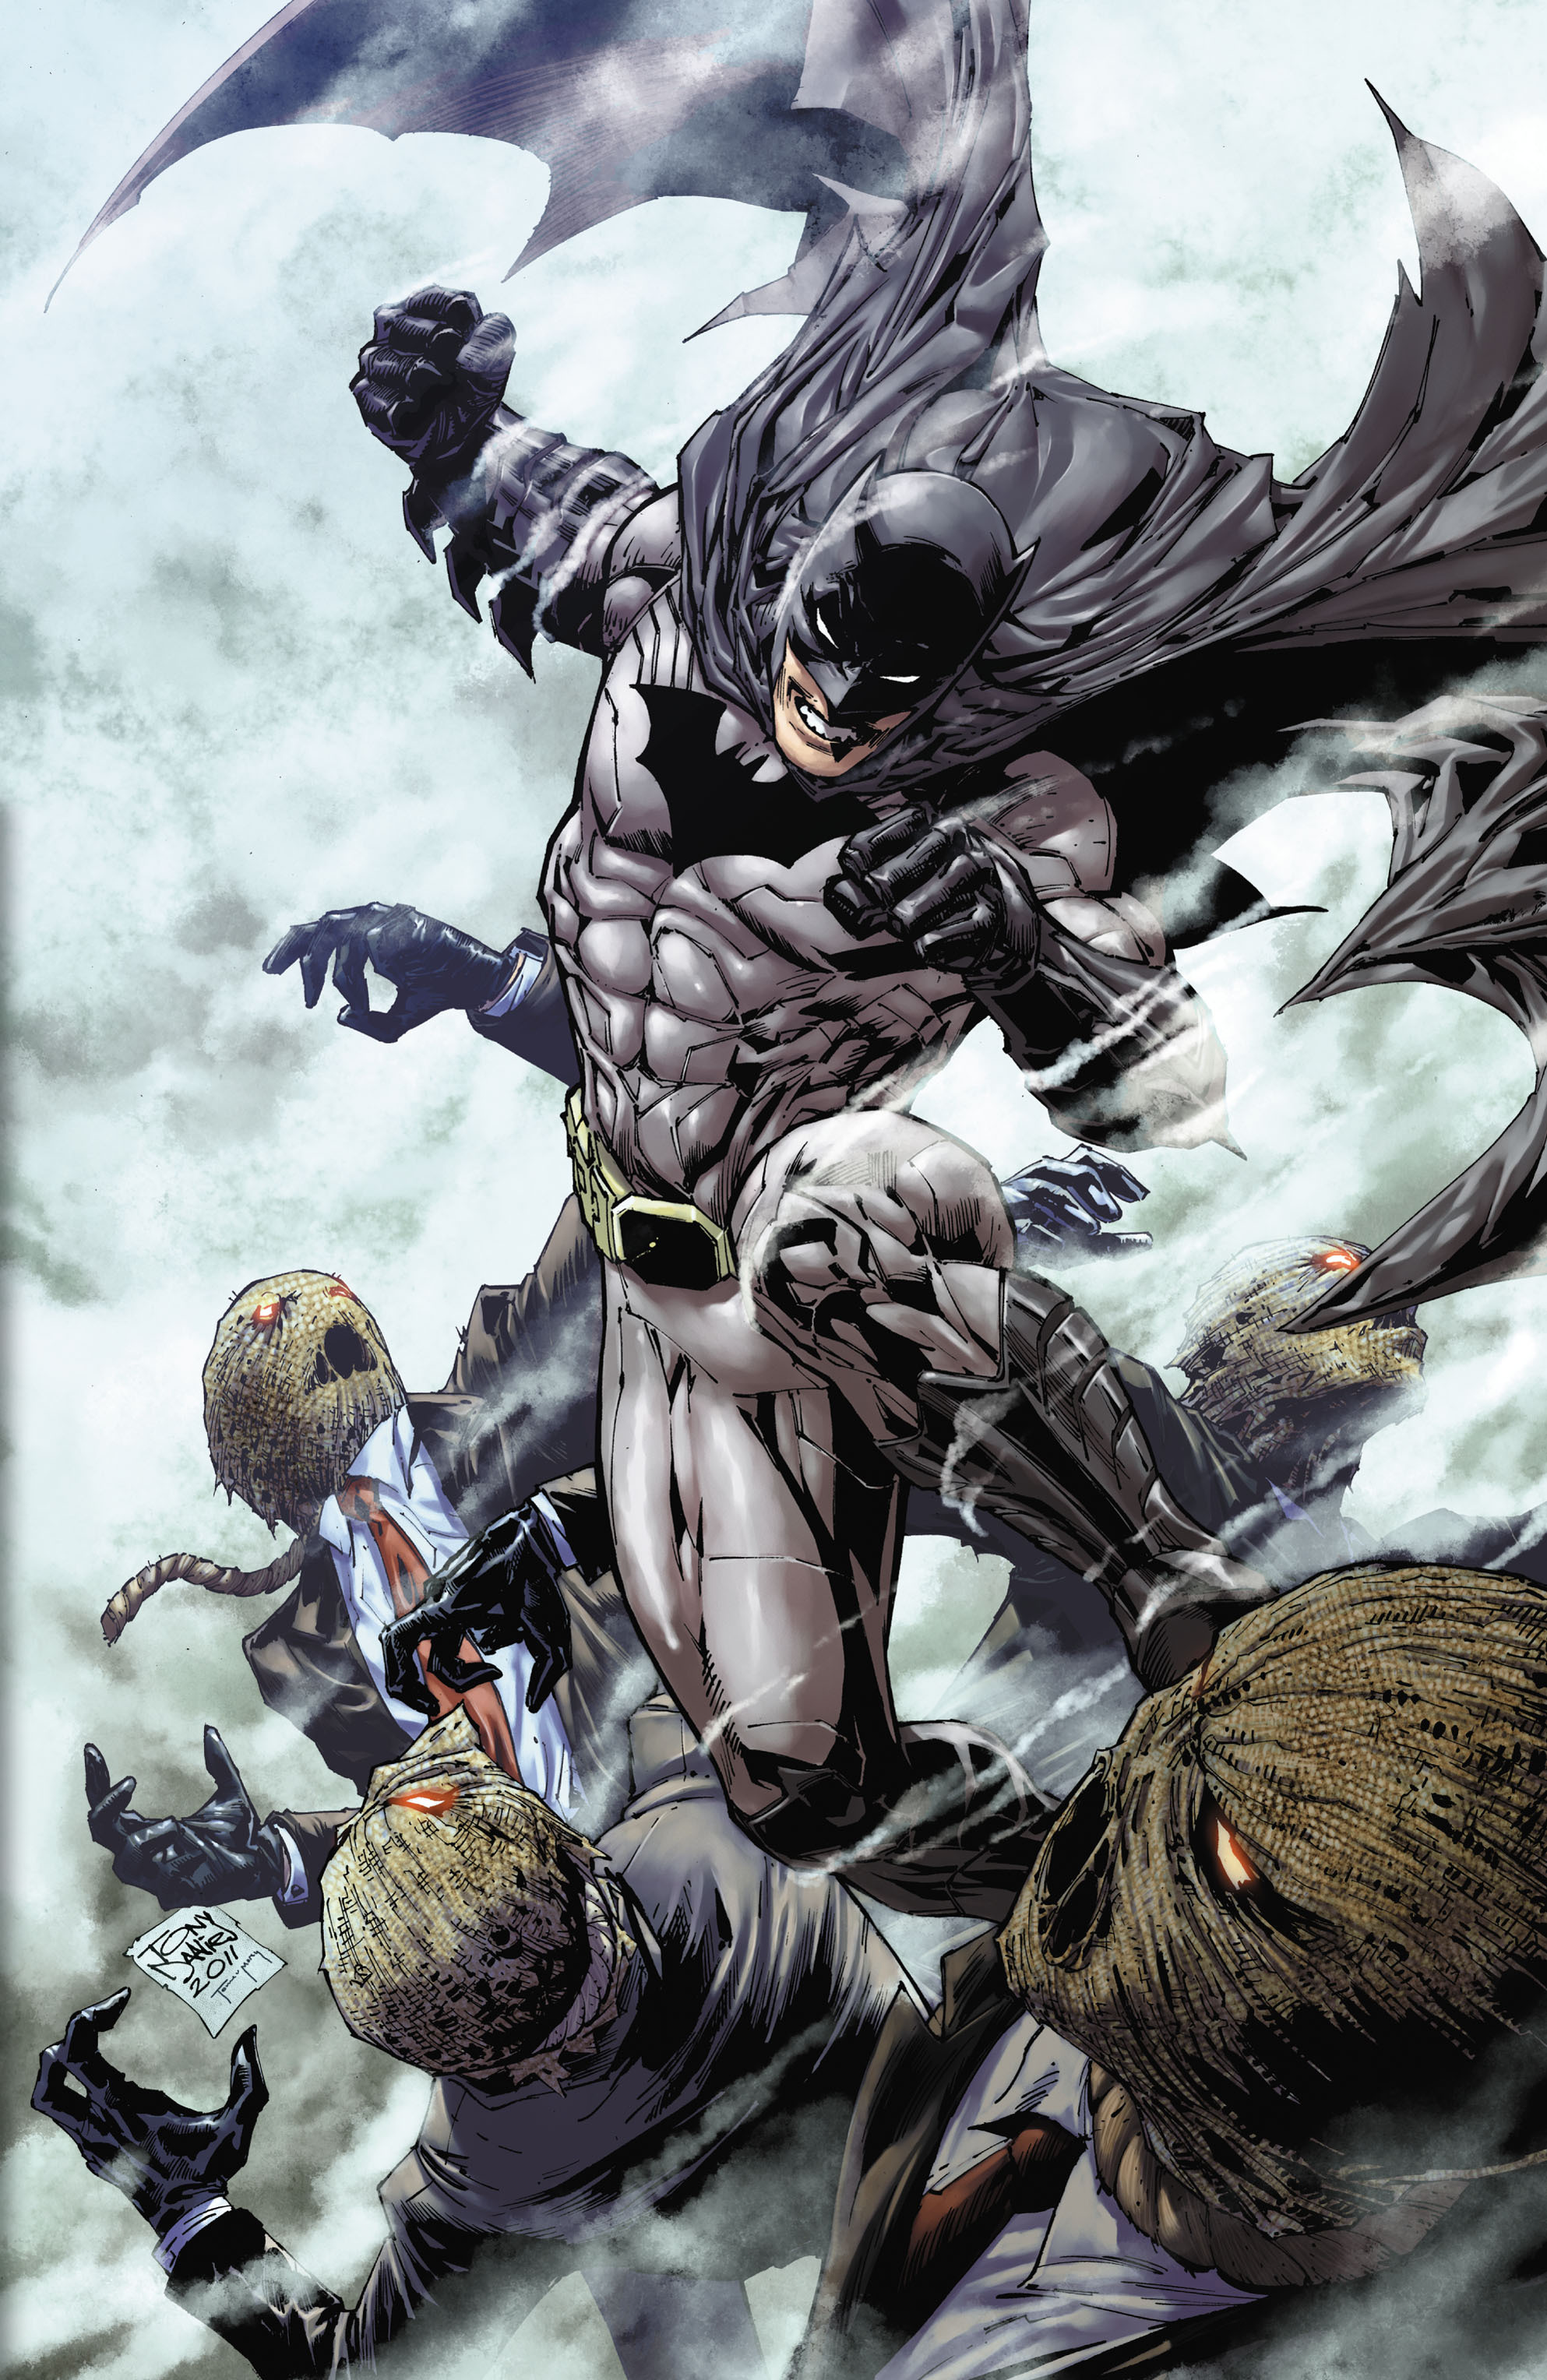 Read online Batman: Detective Comics comic -  Issue # TPB 2 - 5